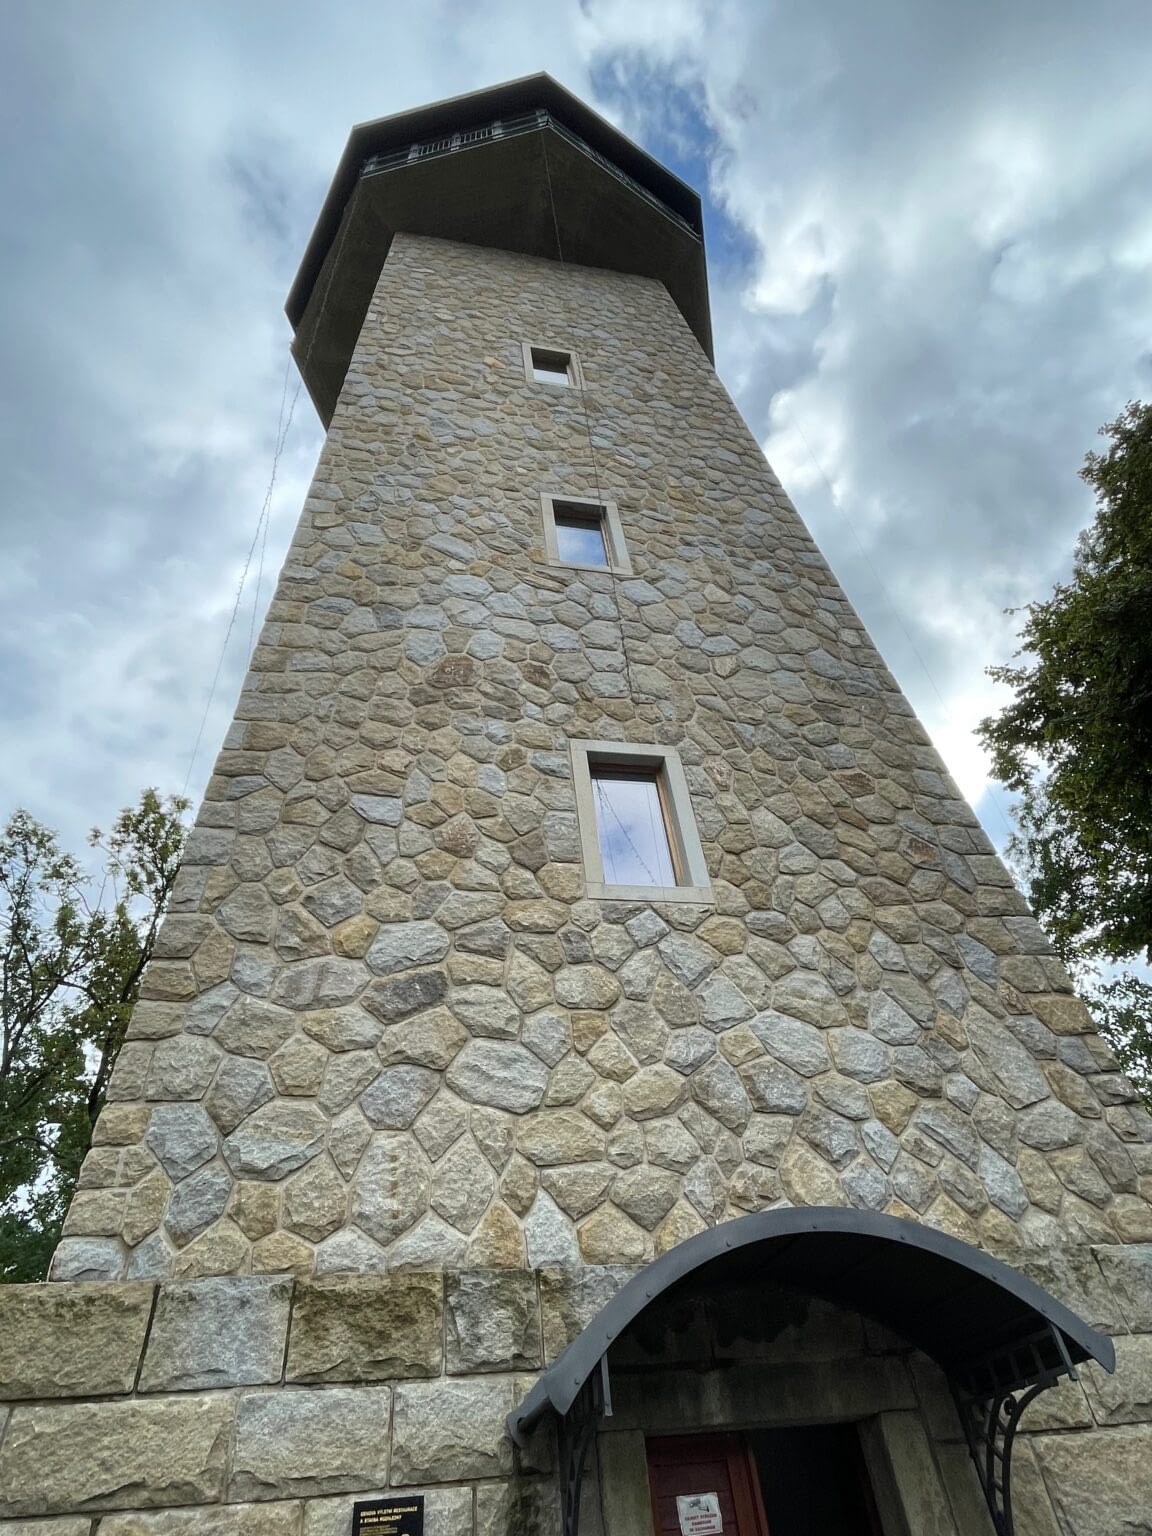 Tower in Kolin CR